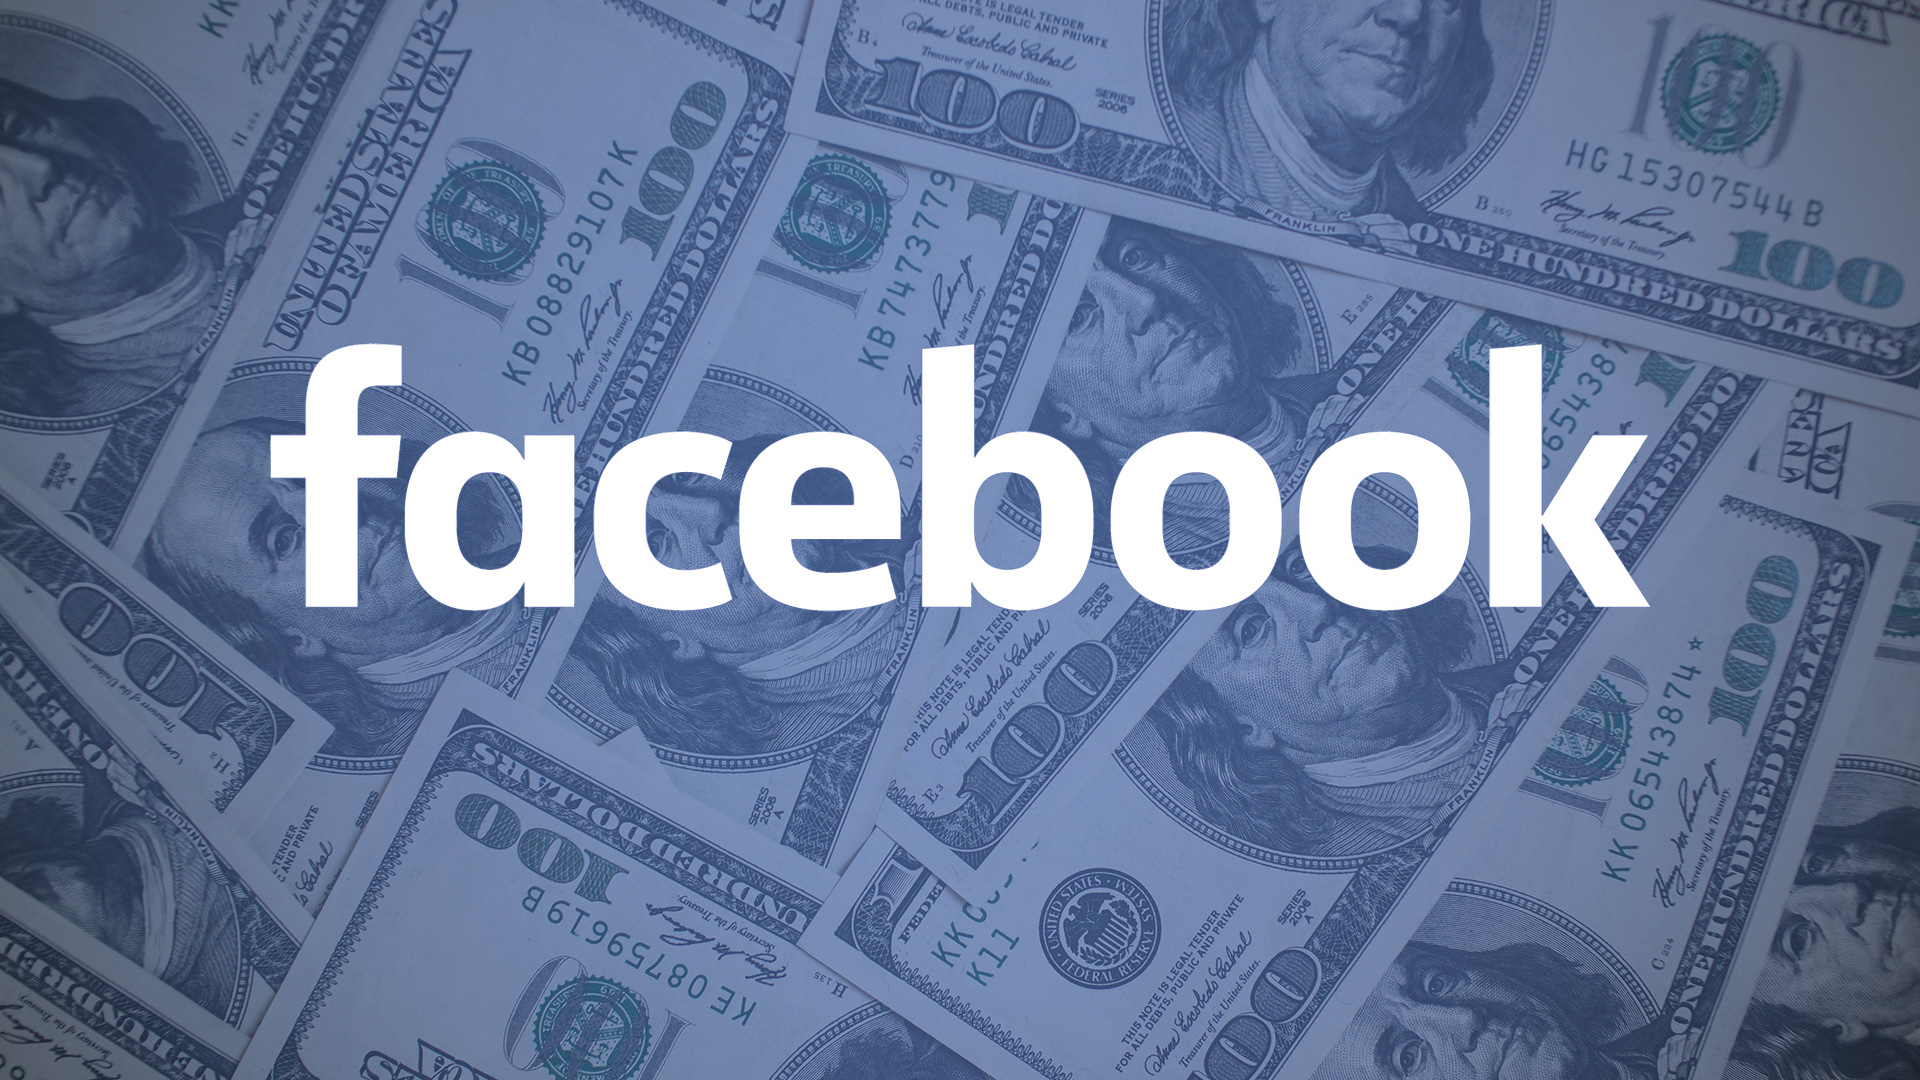 facebook-money-revenue-dollars2-ss-1920